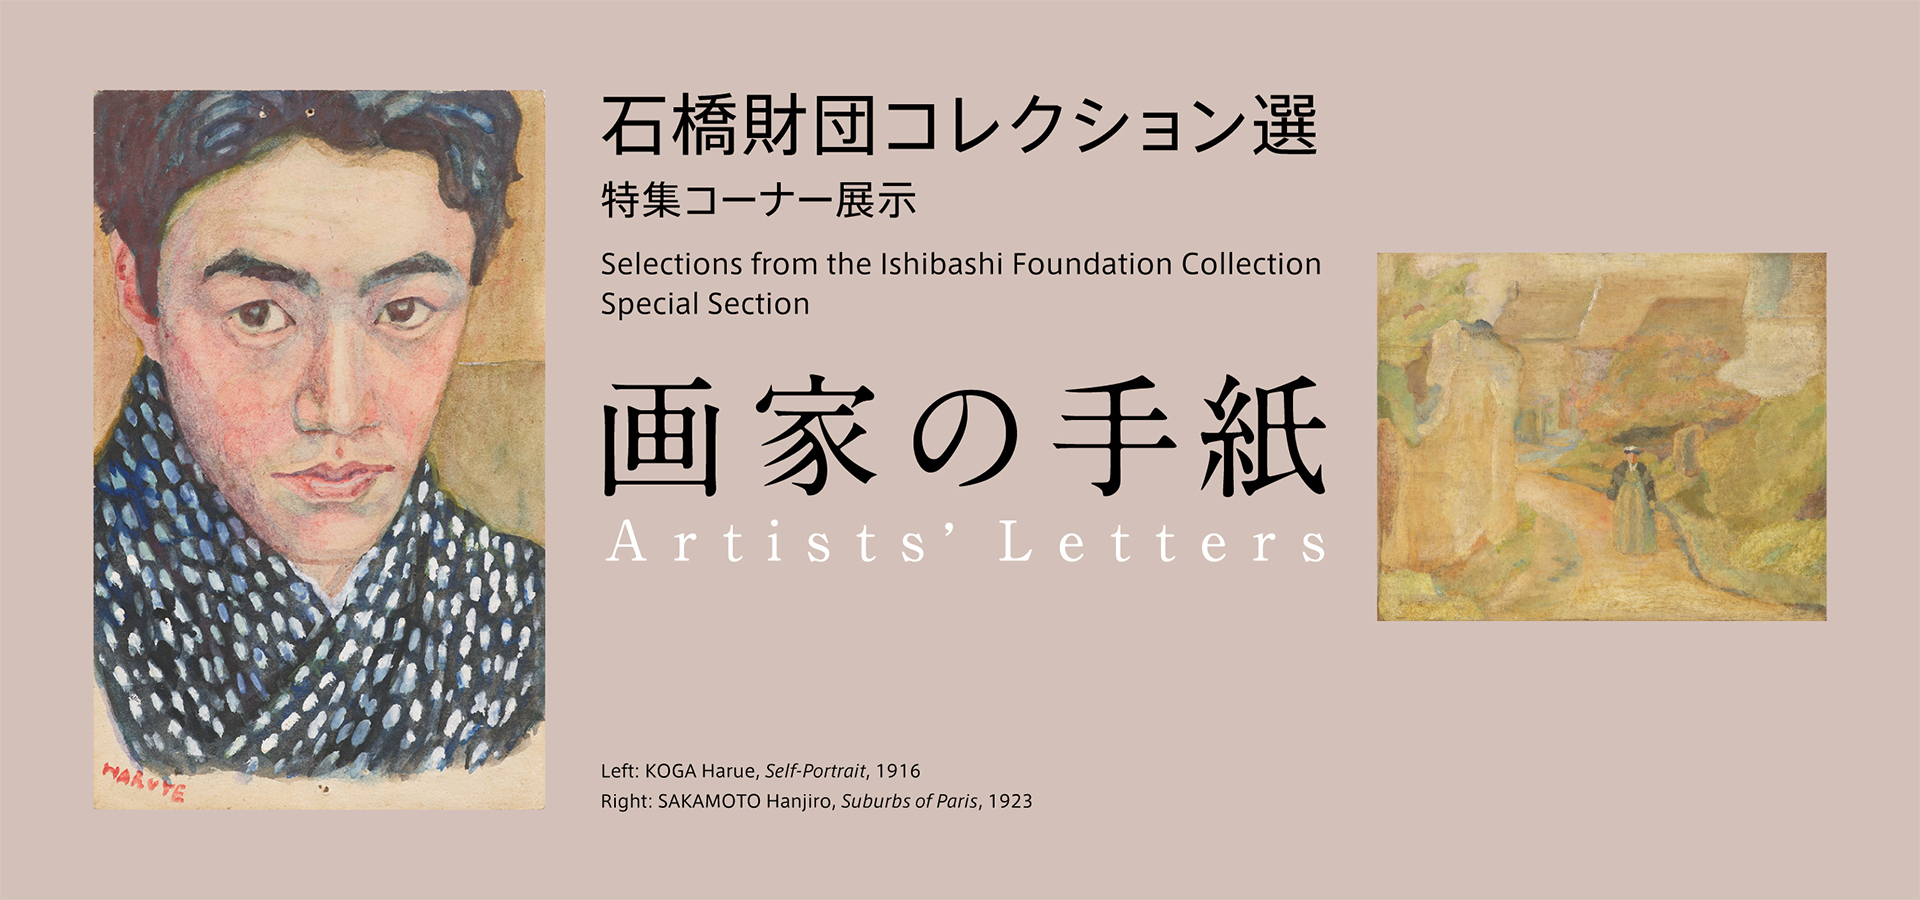 石橋財団コレクション選　特集コーナー展示　画家の手紙